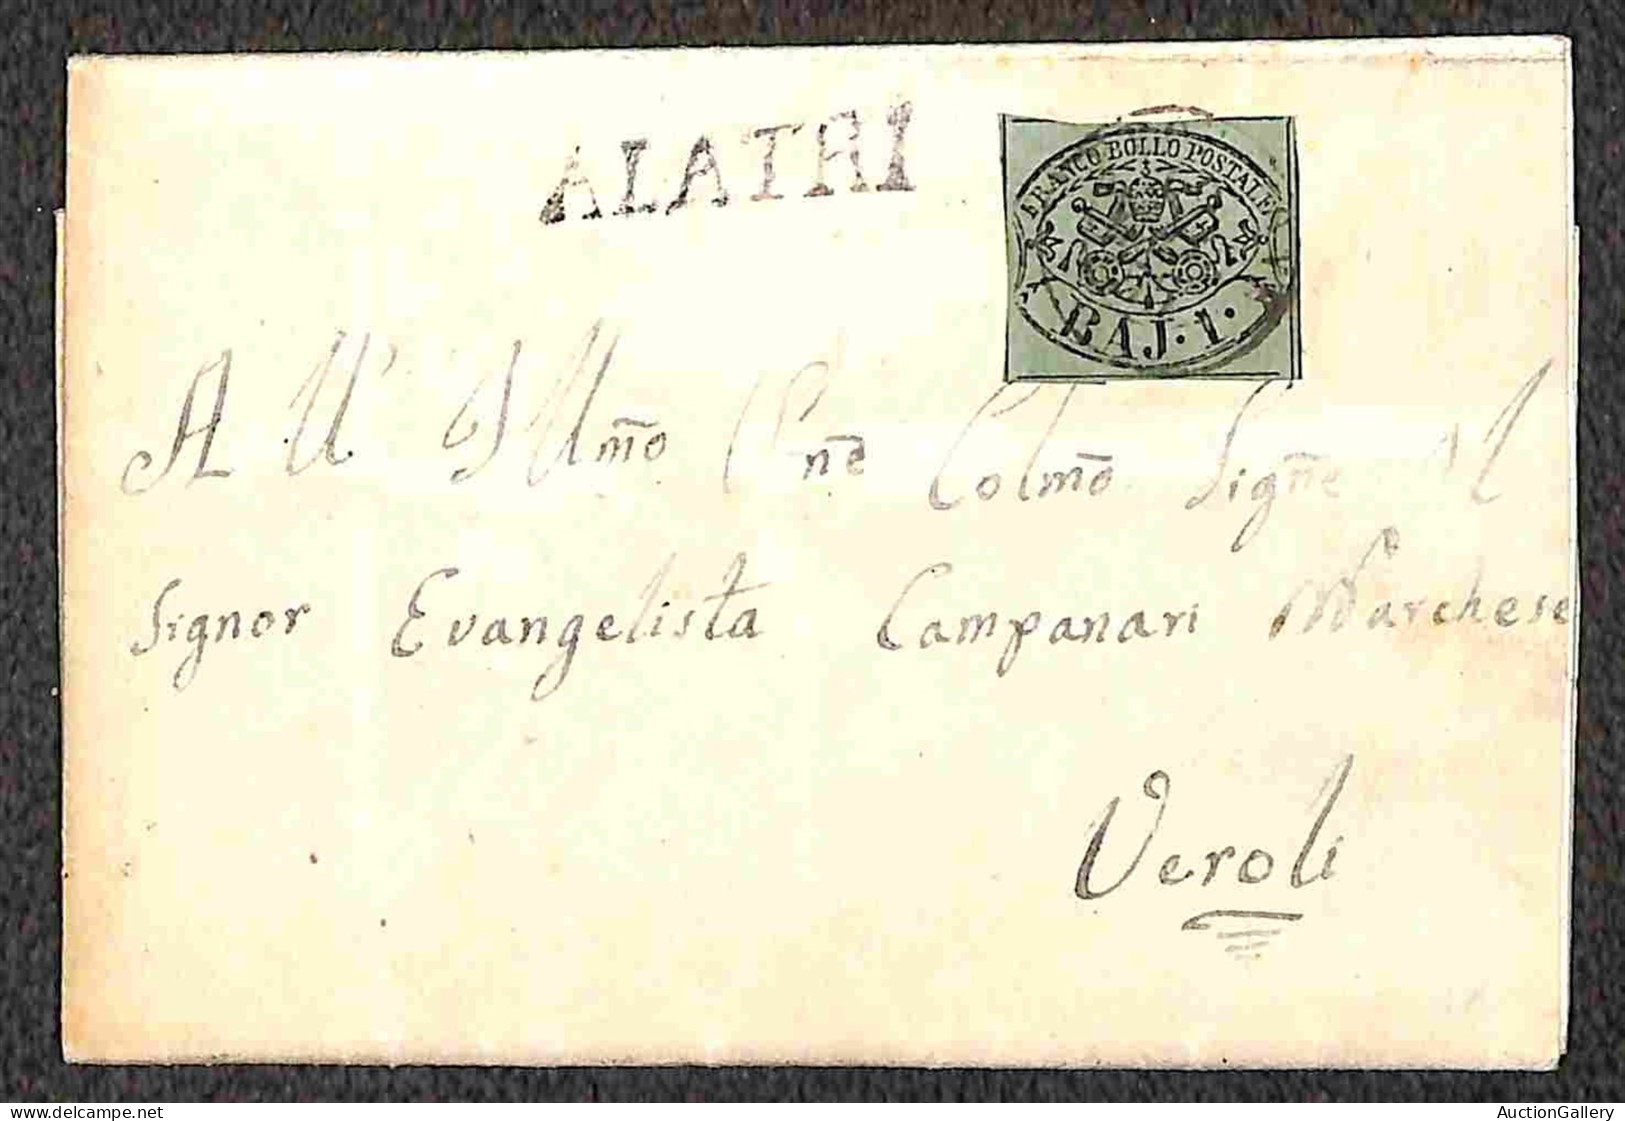 Antichi Stati Italiani - Stato pontificio - 1855/1868 - Insieme di tre lettere affrancate con 1 baj + due lettere con 2 